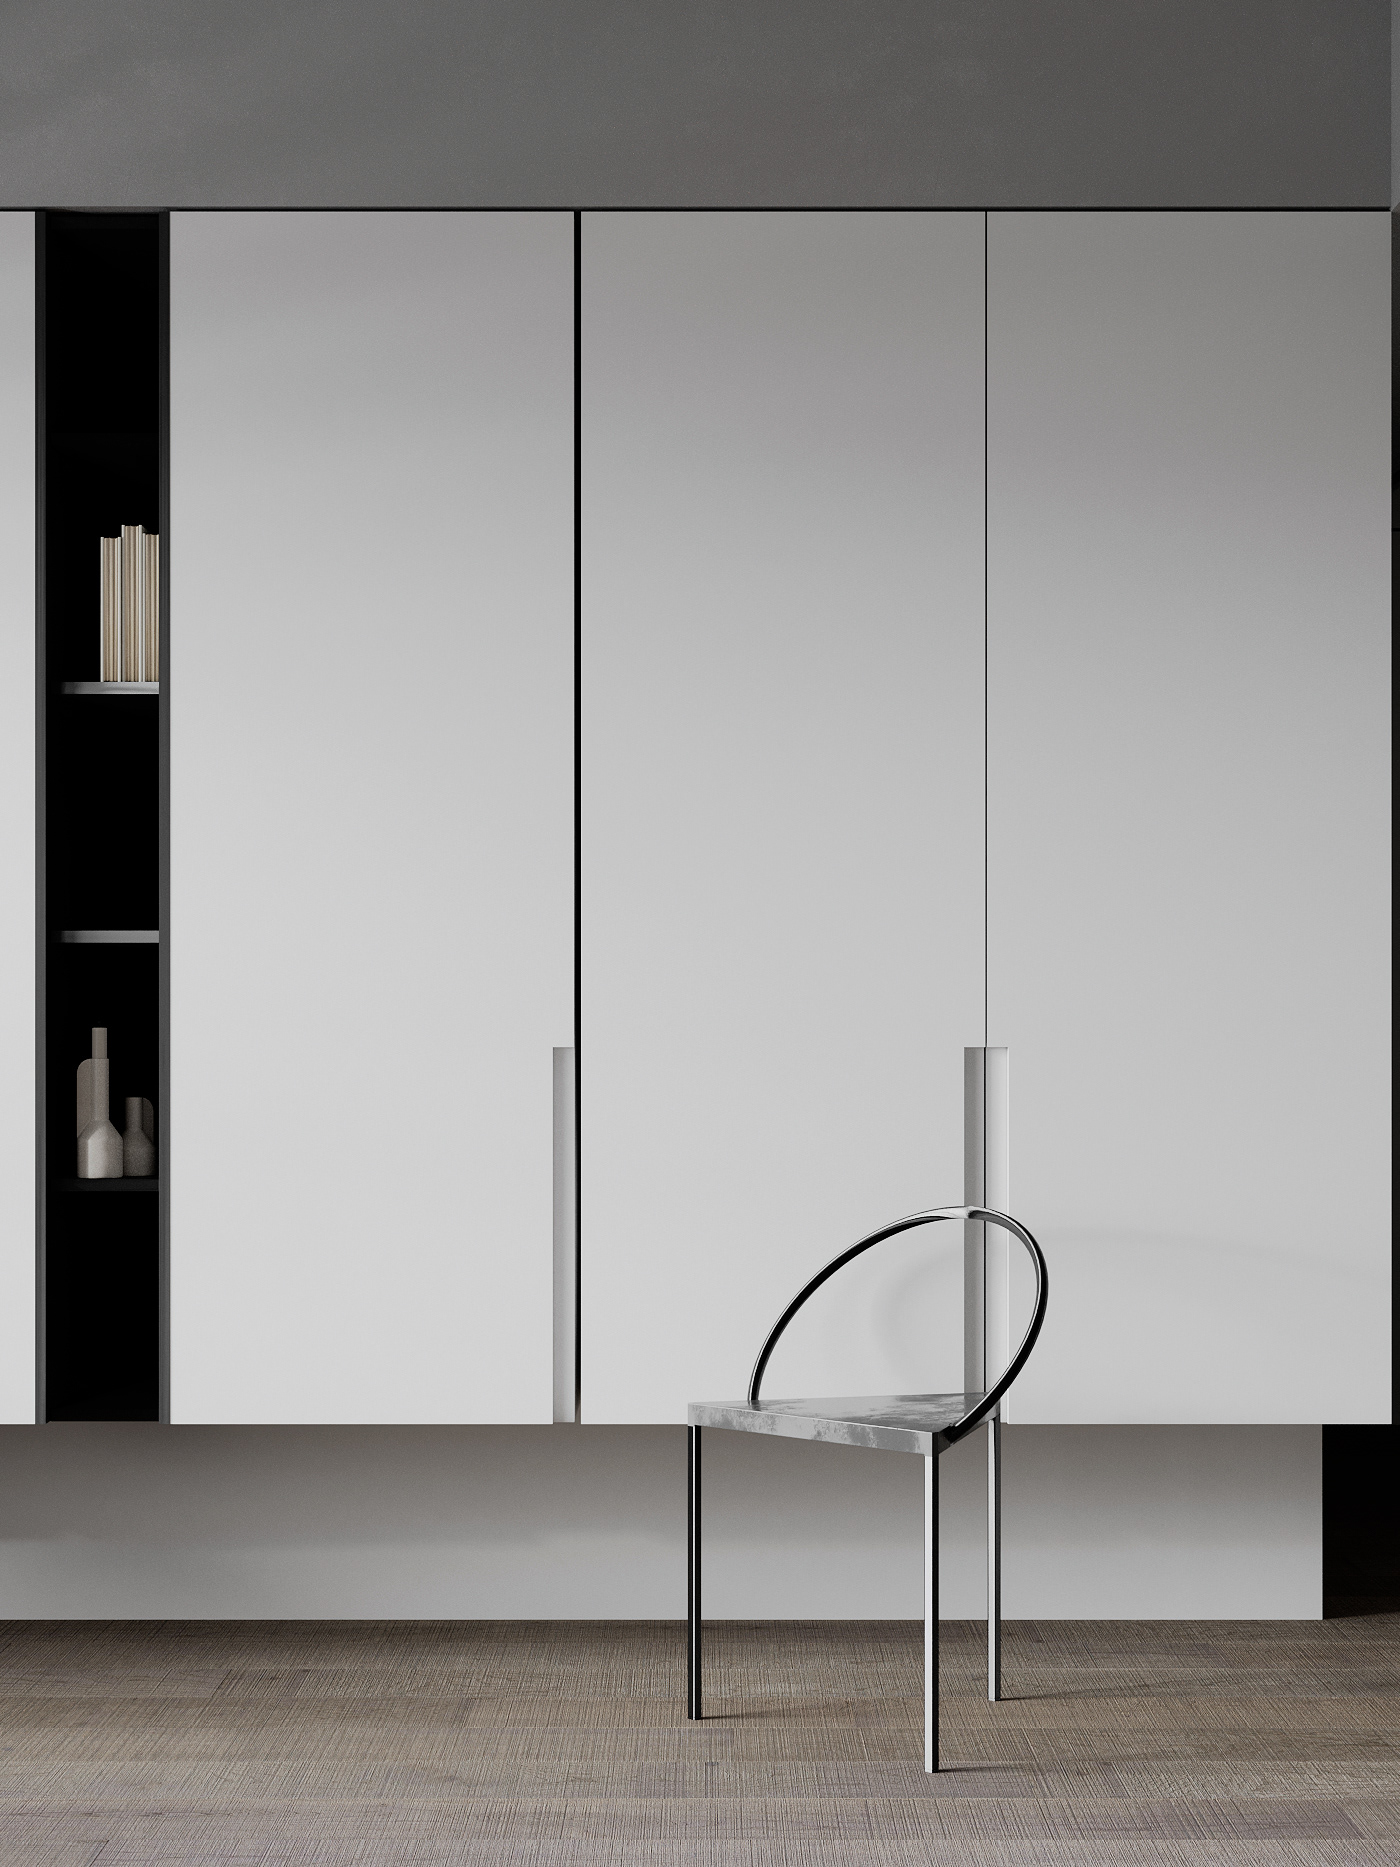 Interior interiordesign visualization architecture archviz Minimalism minimalist clean